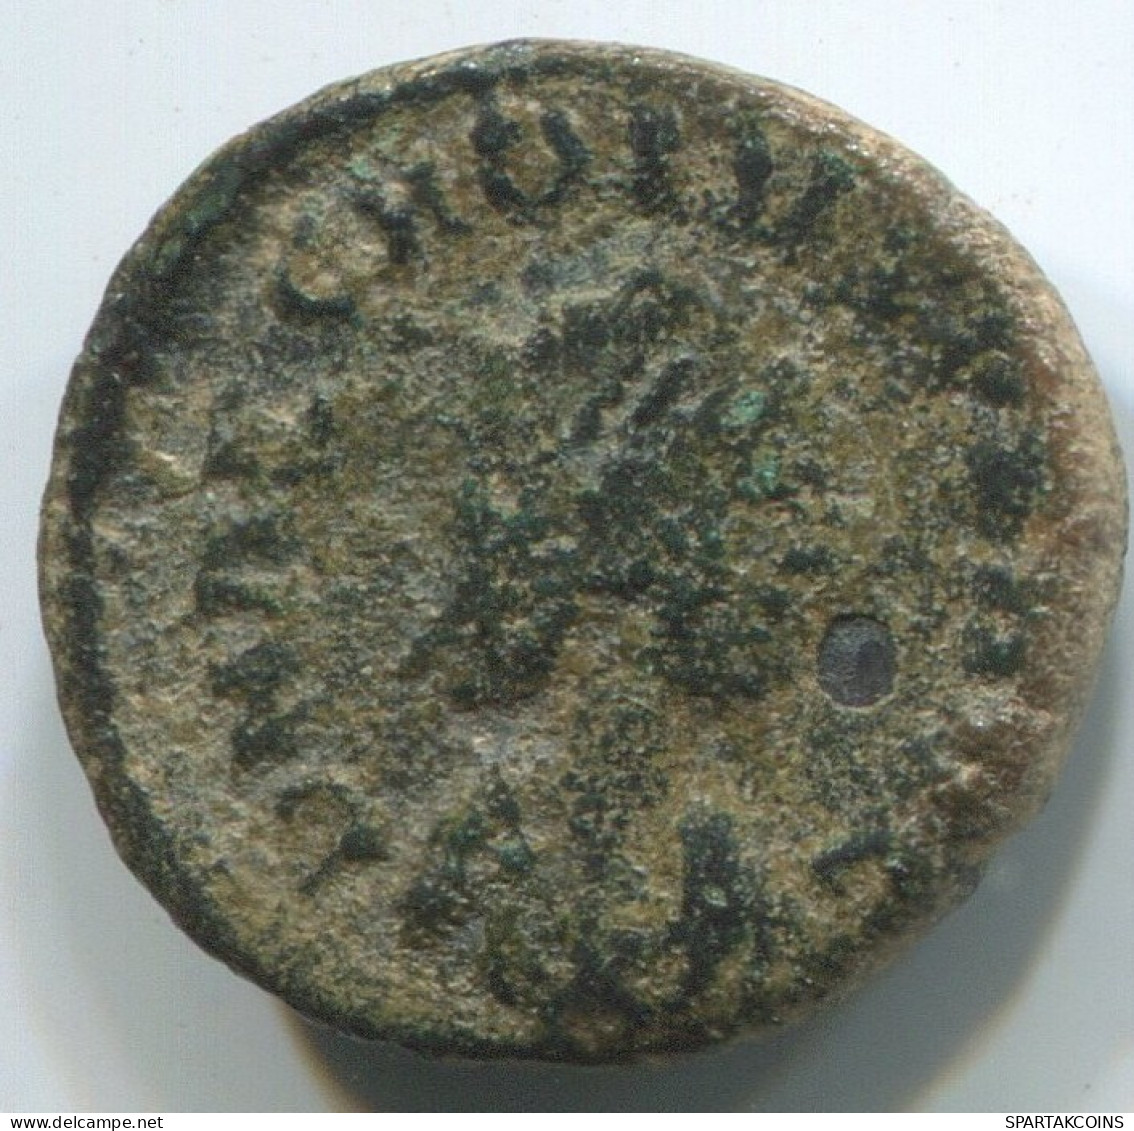 LATE ROMAN IMPERIO Moneda Antiguo Auténtico Roman Moneda 1.5g/14mm #ANT2446.14.E.A - Der Spätrömanischen Reich (363 / 476)